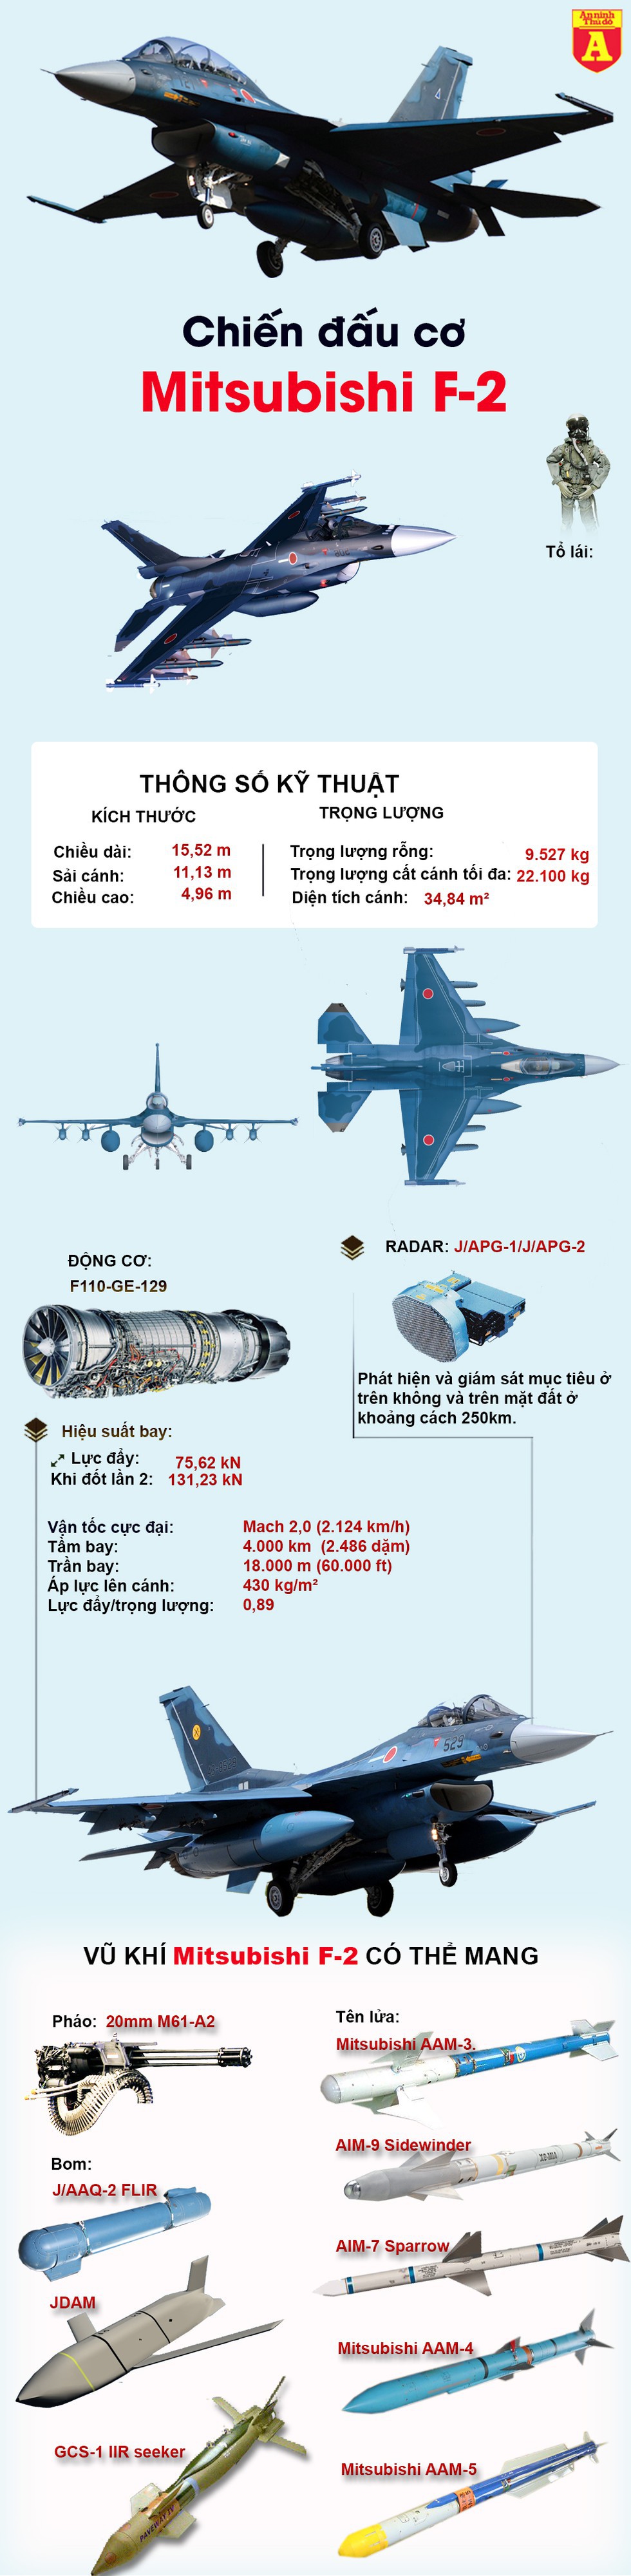 [Infographics] Mitsubishi F-2, phiên bản mạnh nhất được phát triển từ F-16 của Nhật Bản - Ảnh 1